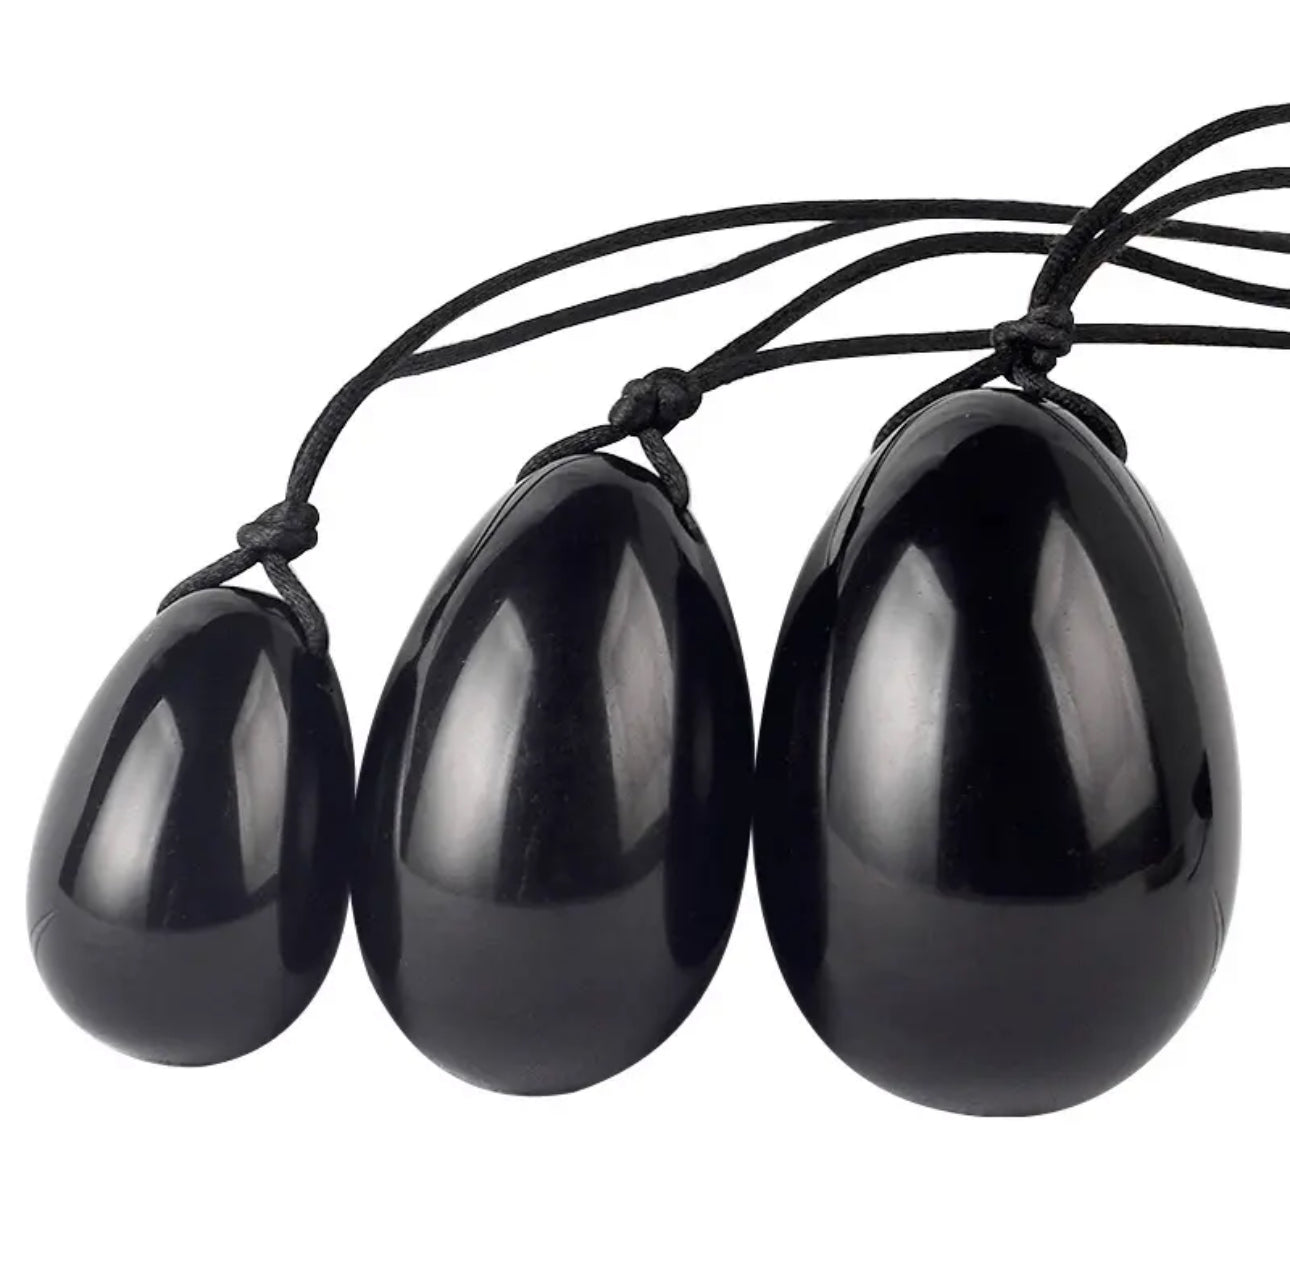 Ensemble d'œufs de Yoni en obsidienne noire : Renforcez votre plancher pelvien avec l'œuf de Yoni naturel (œufs en 3 tailles)